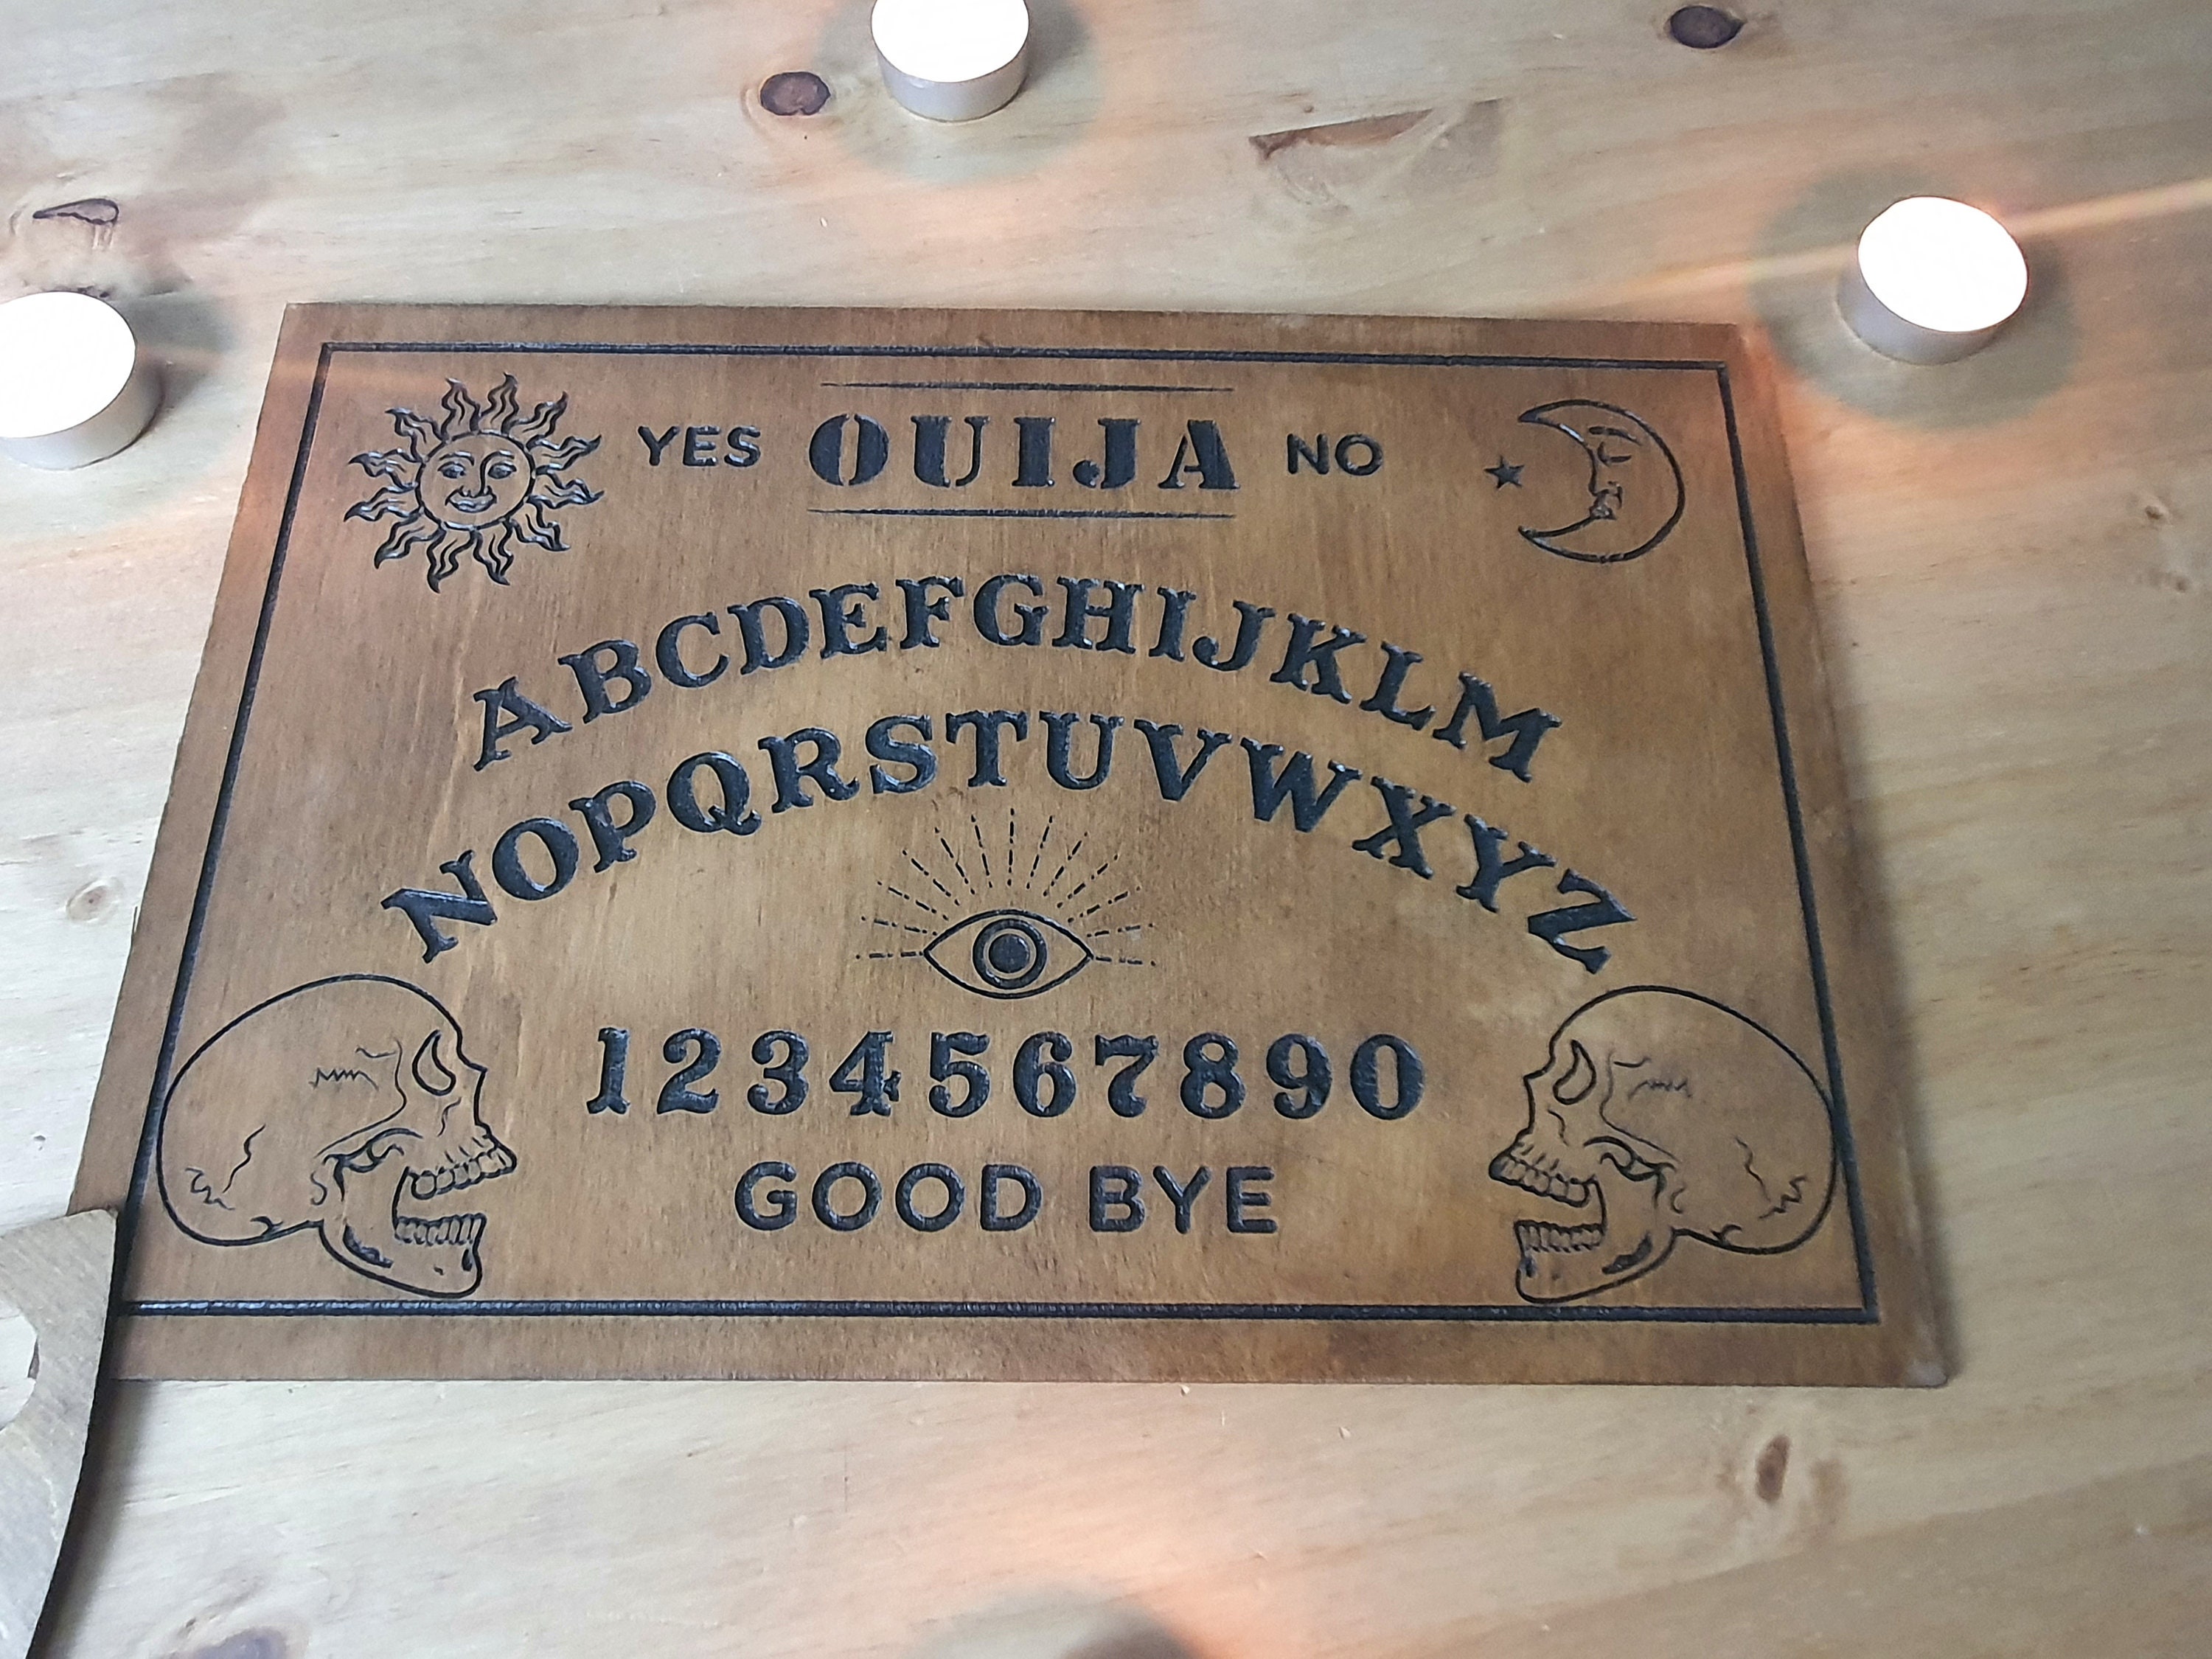 Treingi Tablero Ouija Hecho A Mano Ayuda De Madera En La Comunicación  Tranquila Adecuado Para Reuniones Familiares